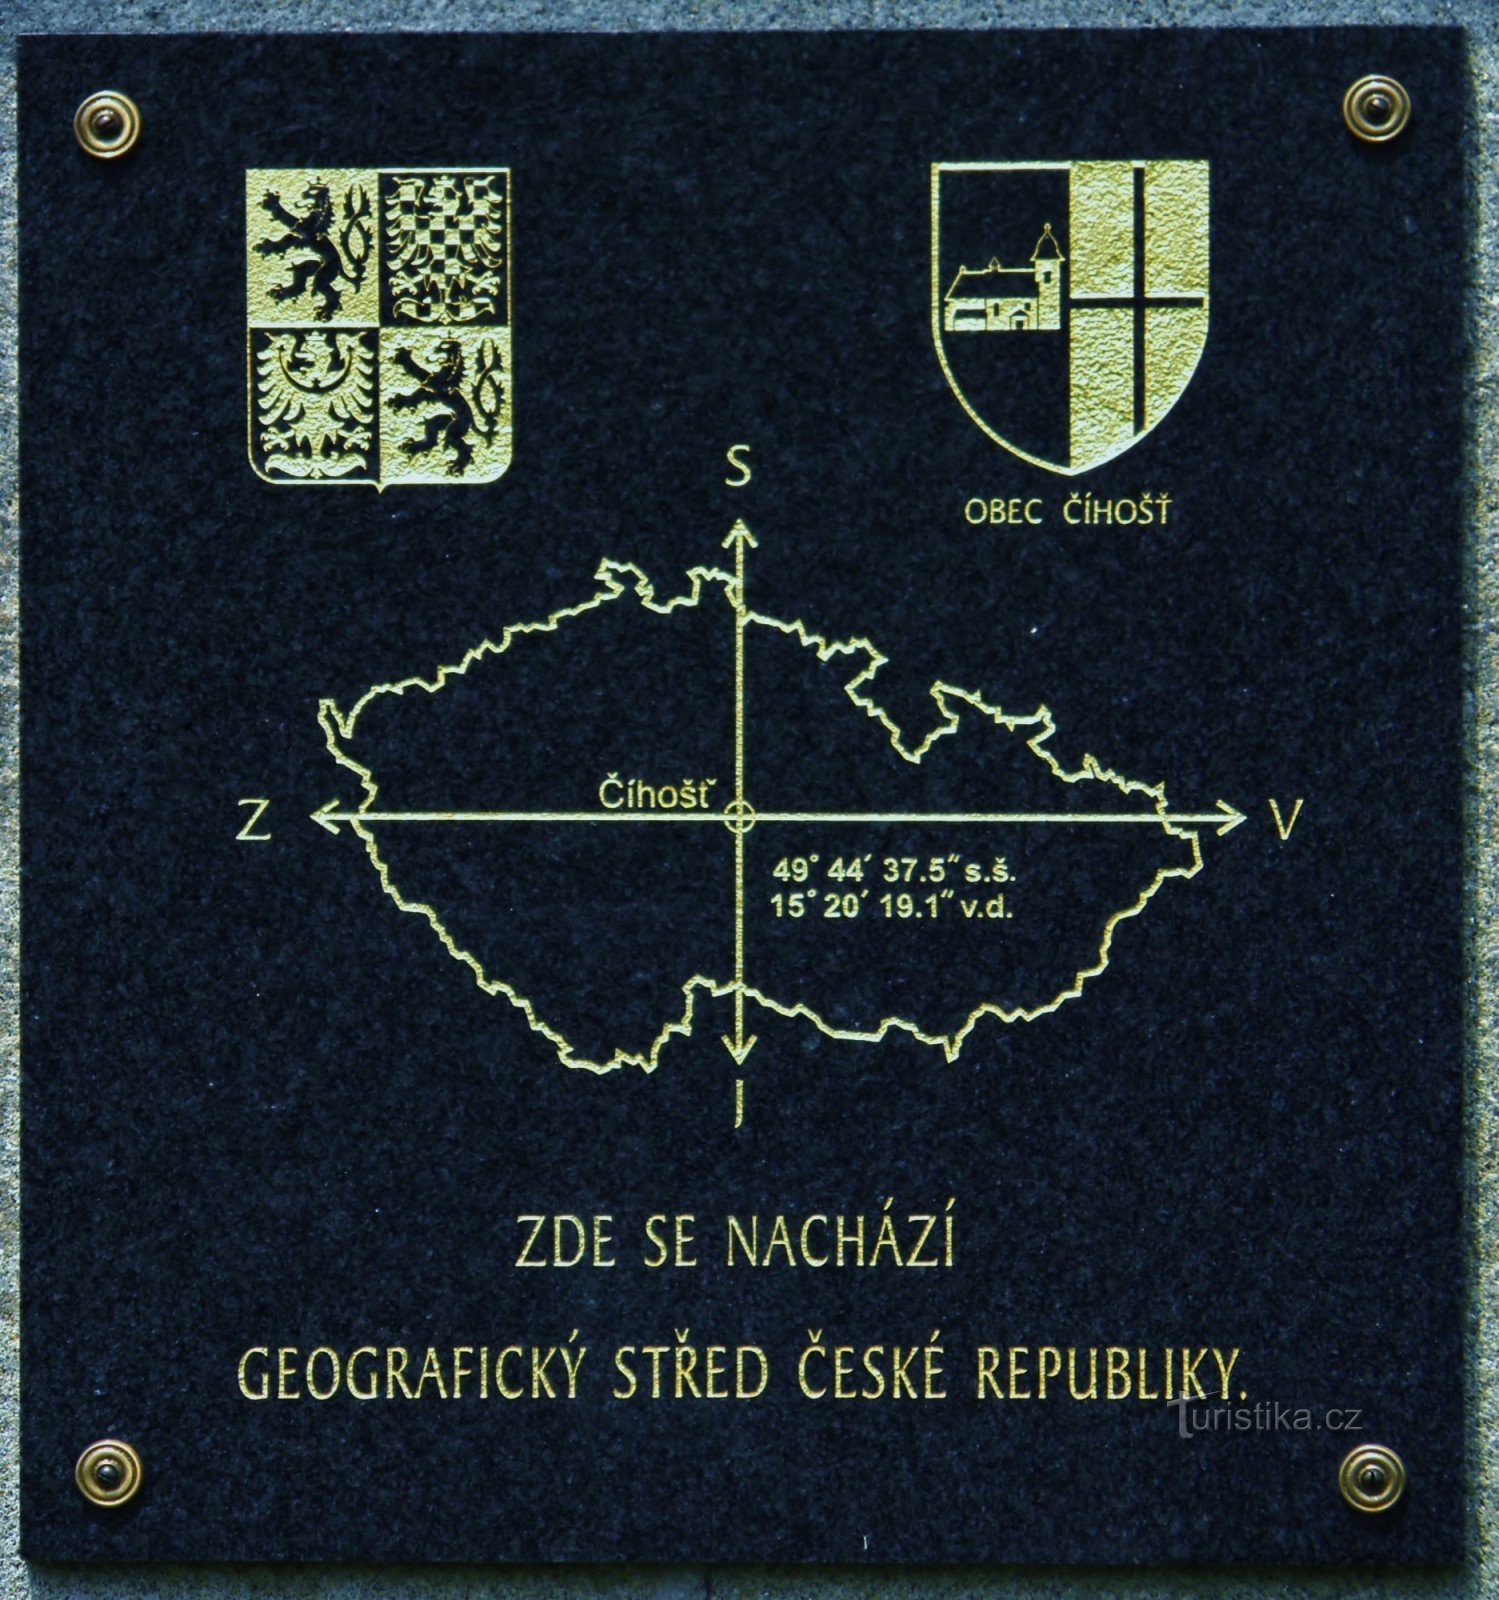 Информационное табло на каменном памятнике в географическом центре Чехии.